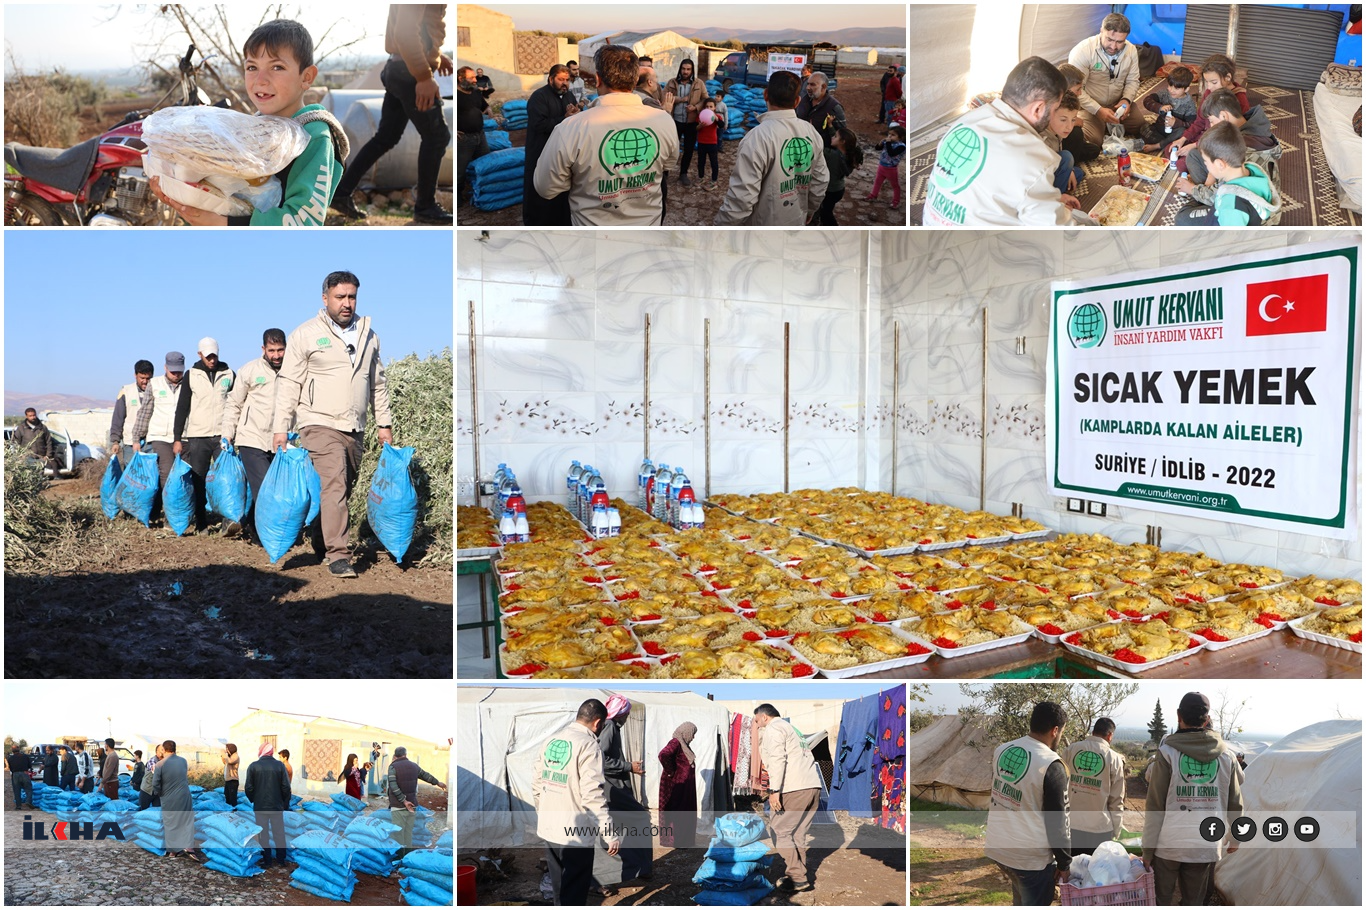 قافلة الأمل تقوم بتوزيع الحطب والوجبات الساخنة على مئات العوائل المحتاجة في سوريا